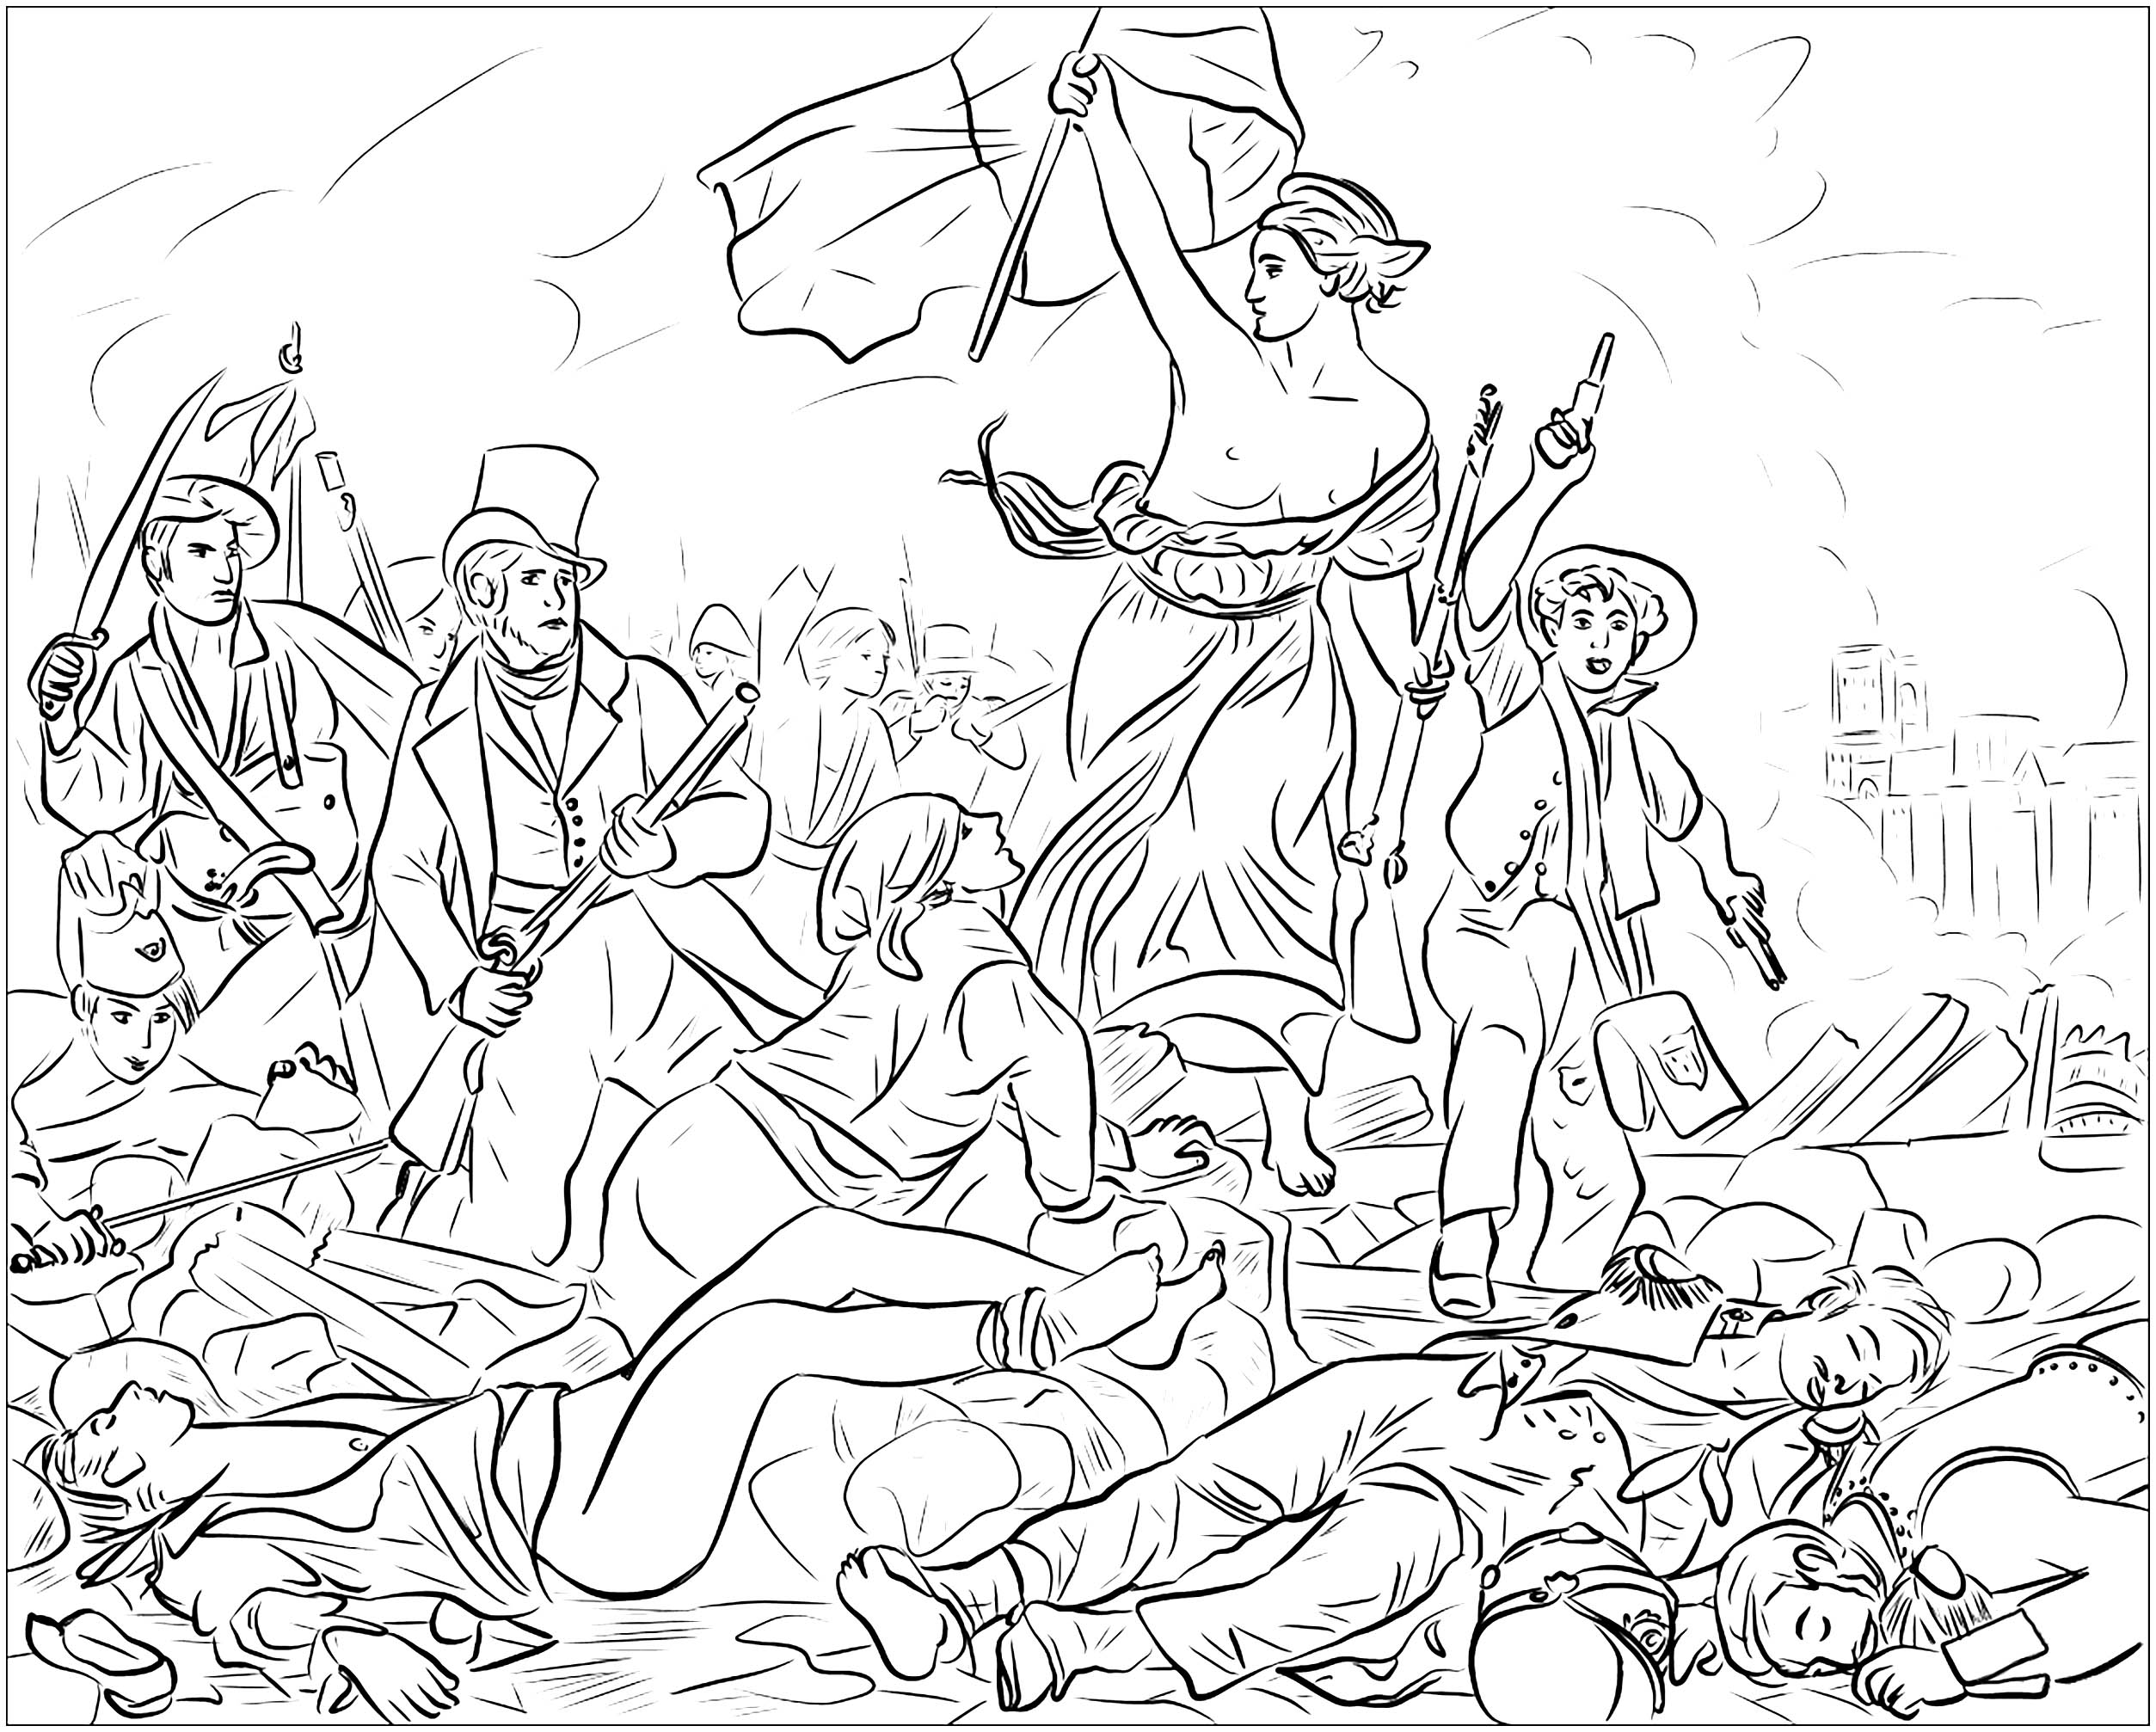 Página para colorear creada a partir del famoso cuadro conmemorativo de la Revolución de Julio de 1830 en Francia, de Eugène Delacroix : La libertad guiando al pueblo